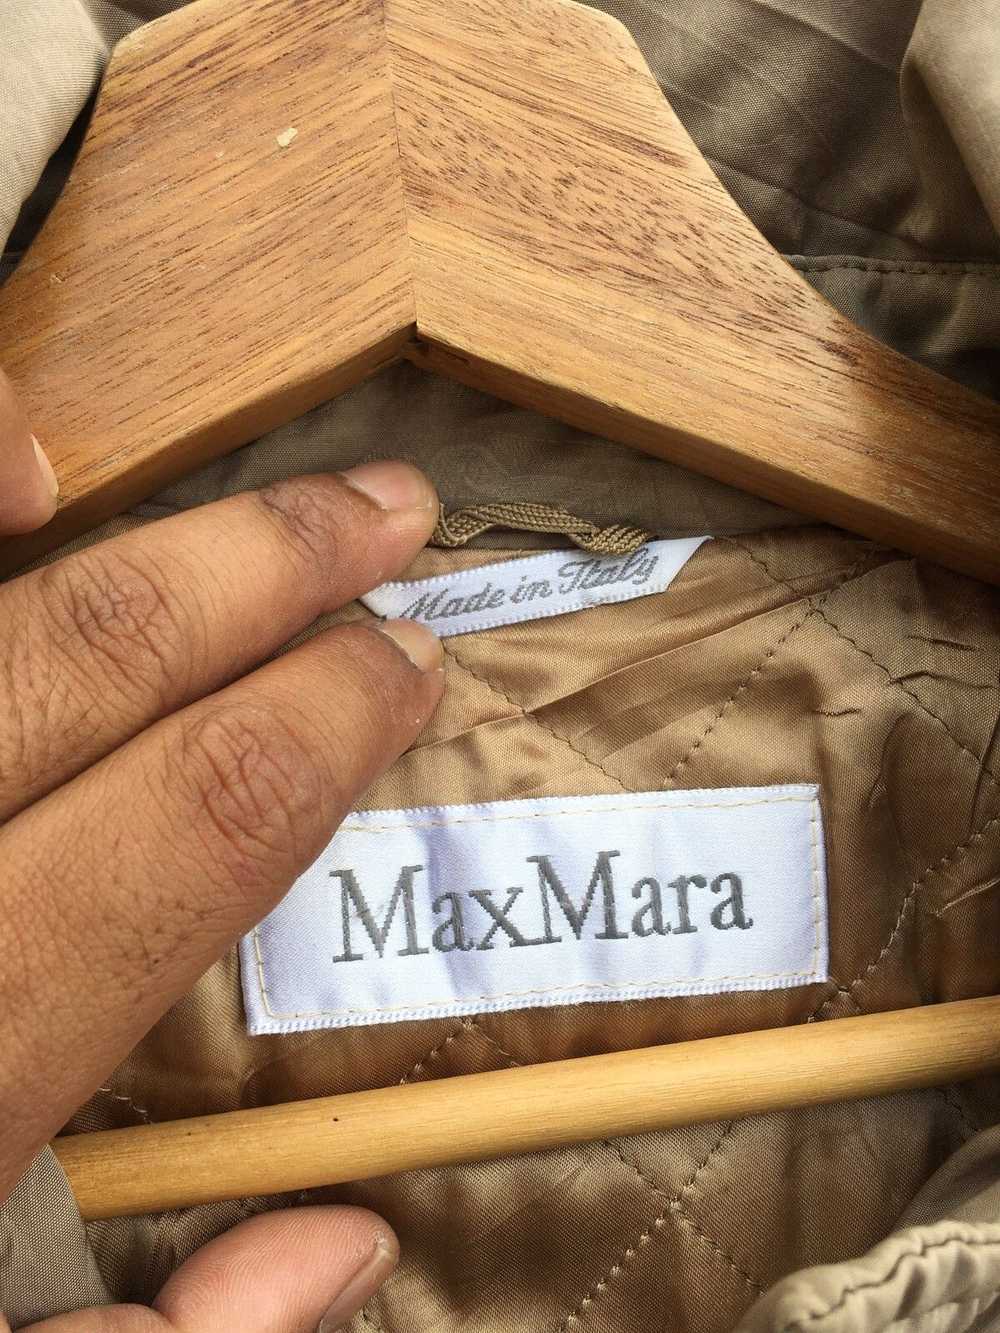 Max Mara Rare Vintage Max Mara Winter Jacket - image 9